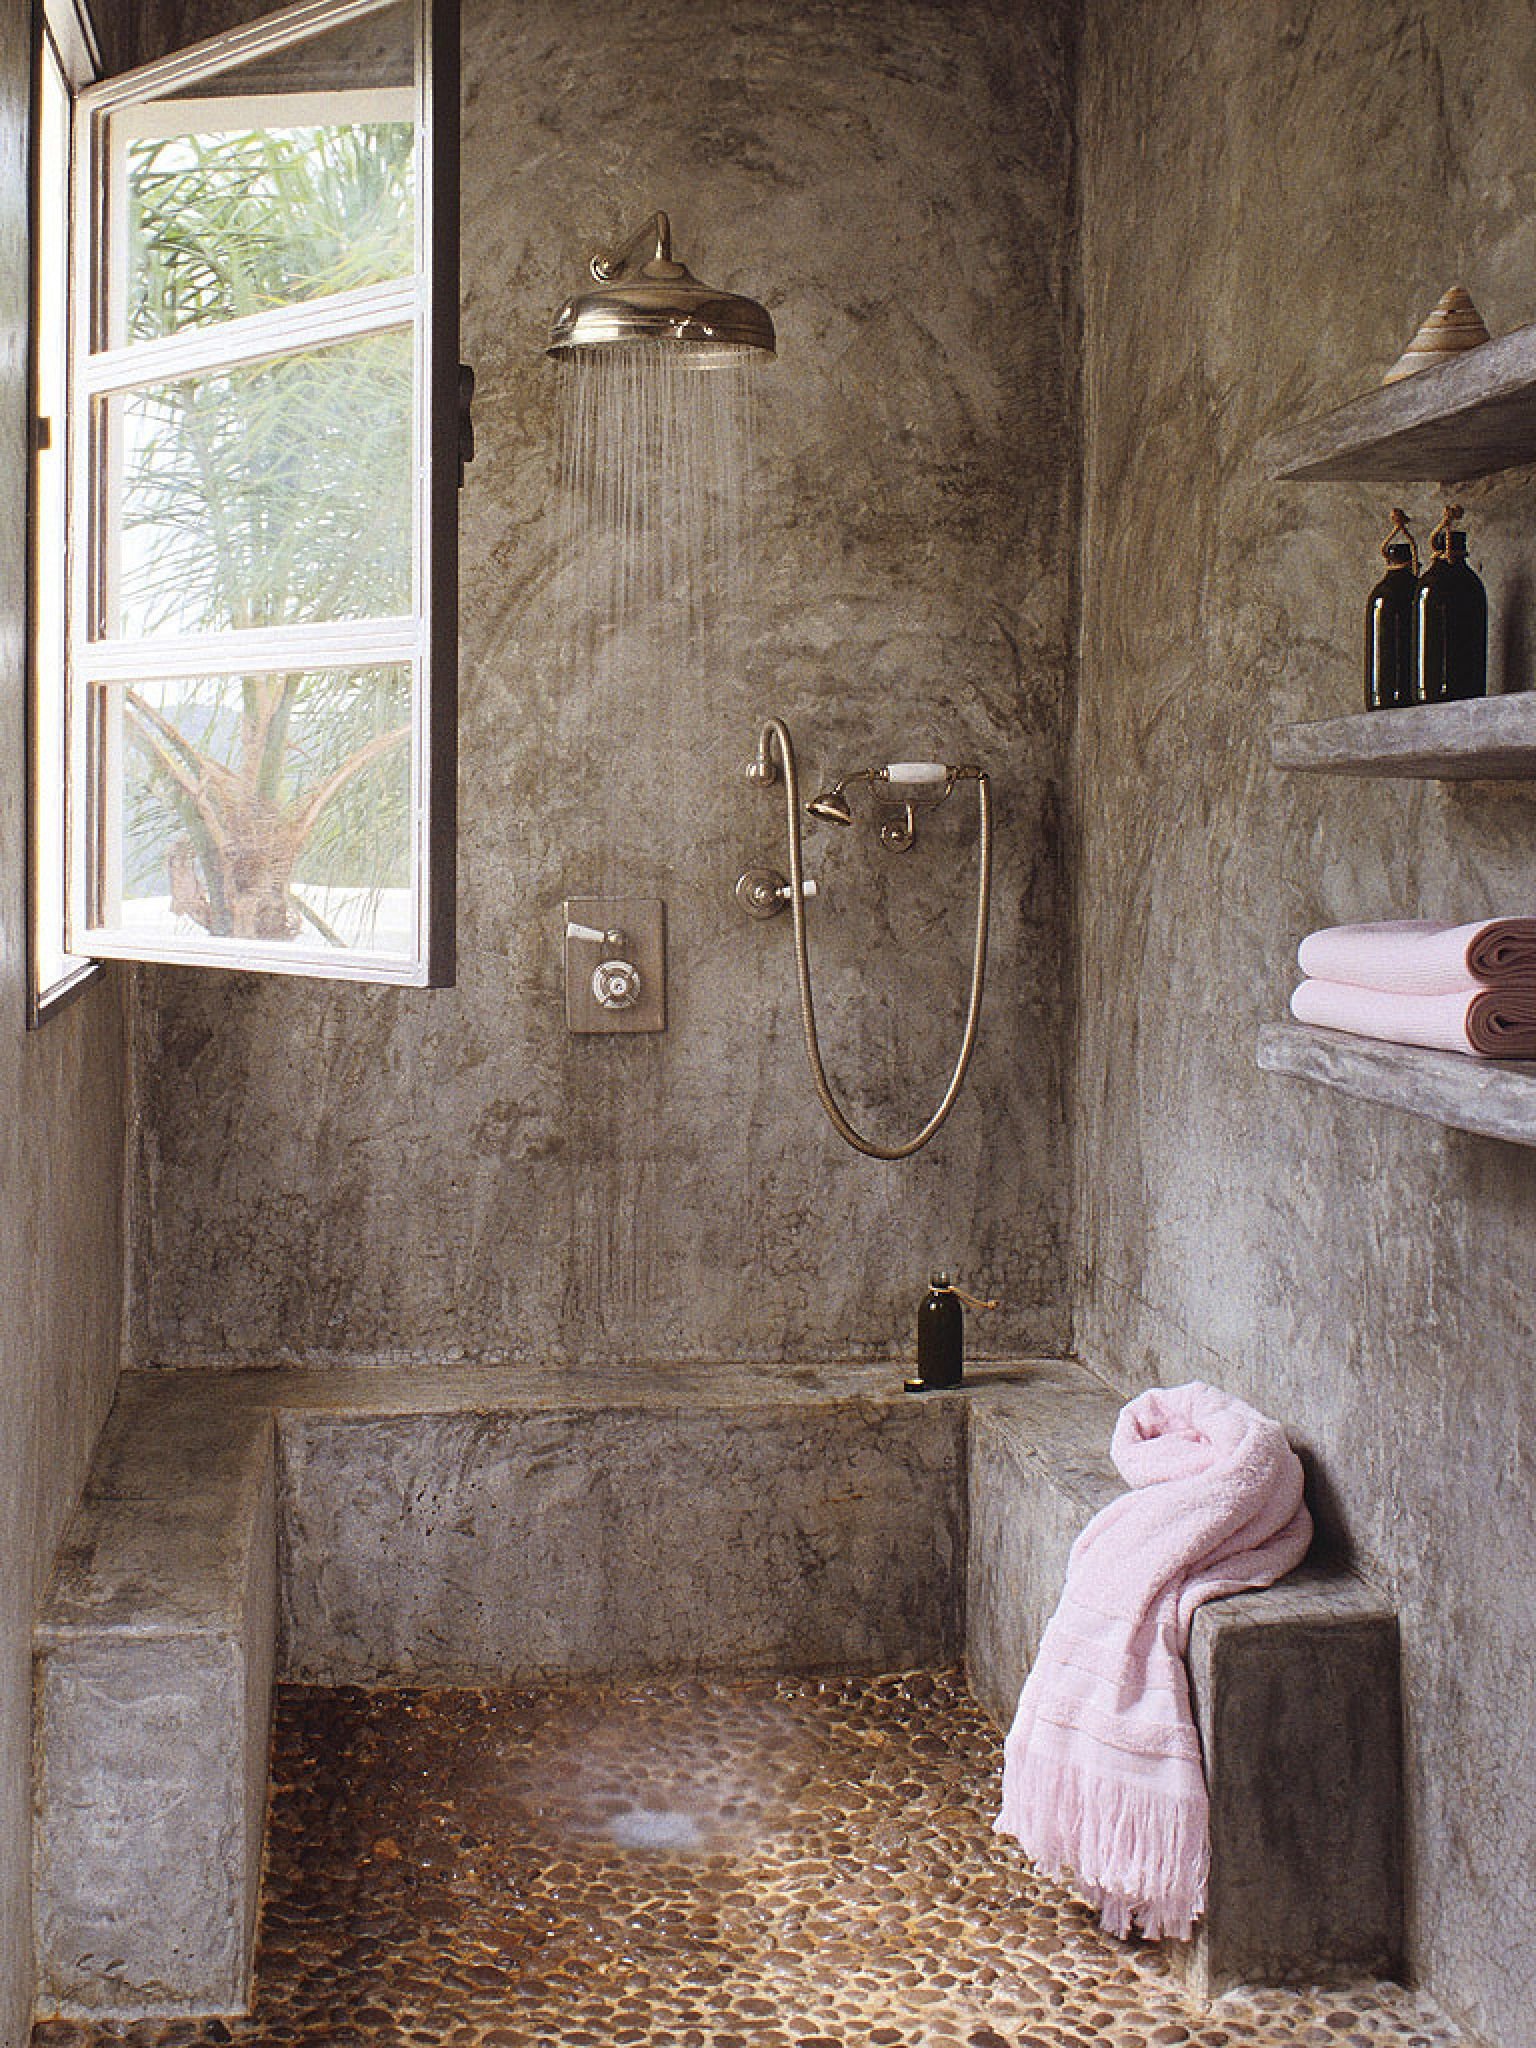 Old shower